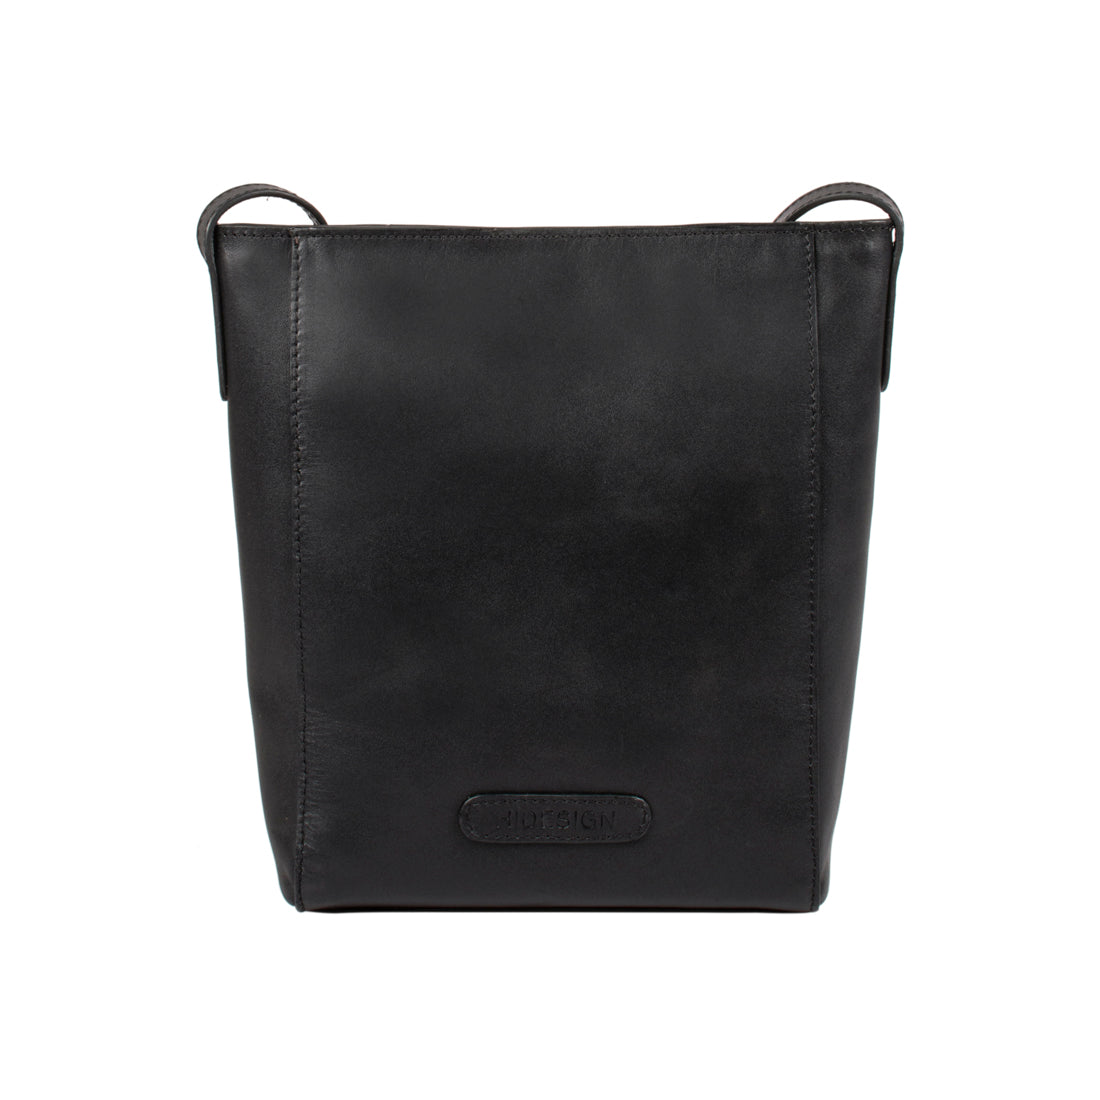 Buy Black Markle Sling Bag Online - Hidesign